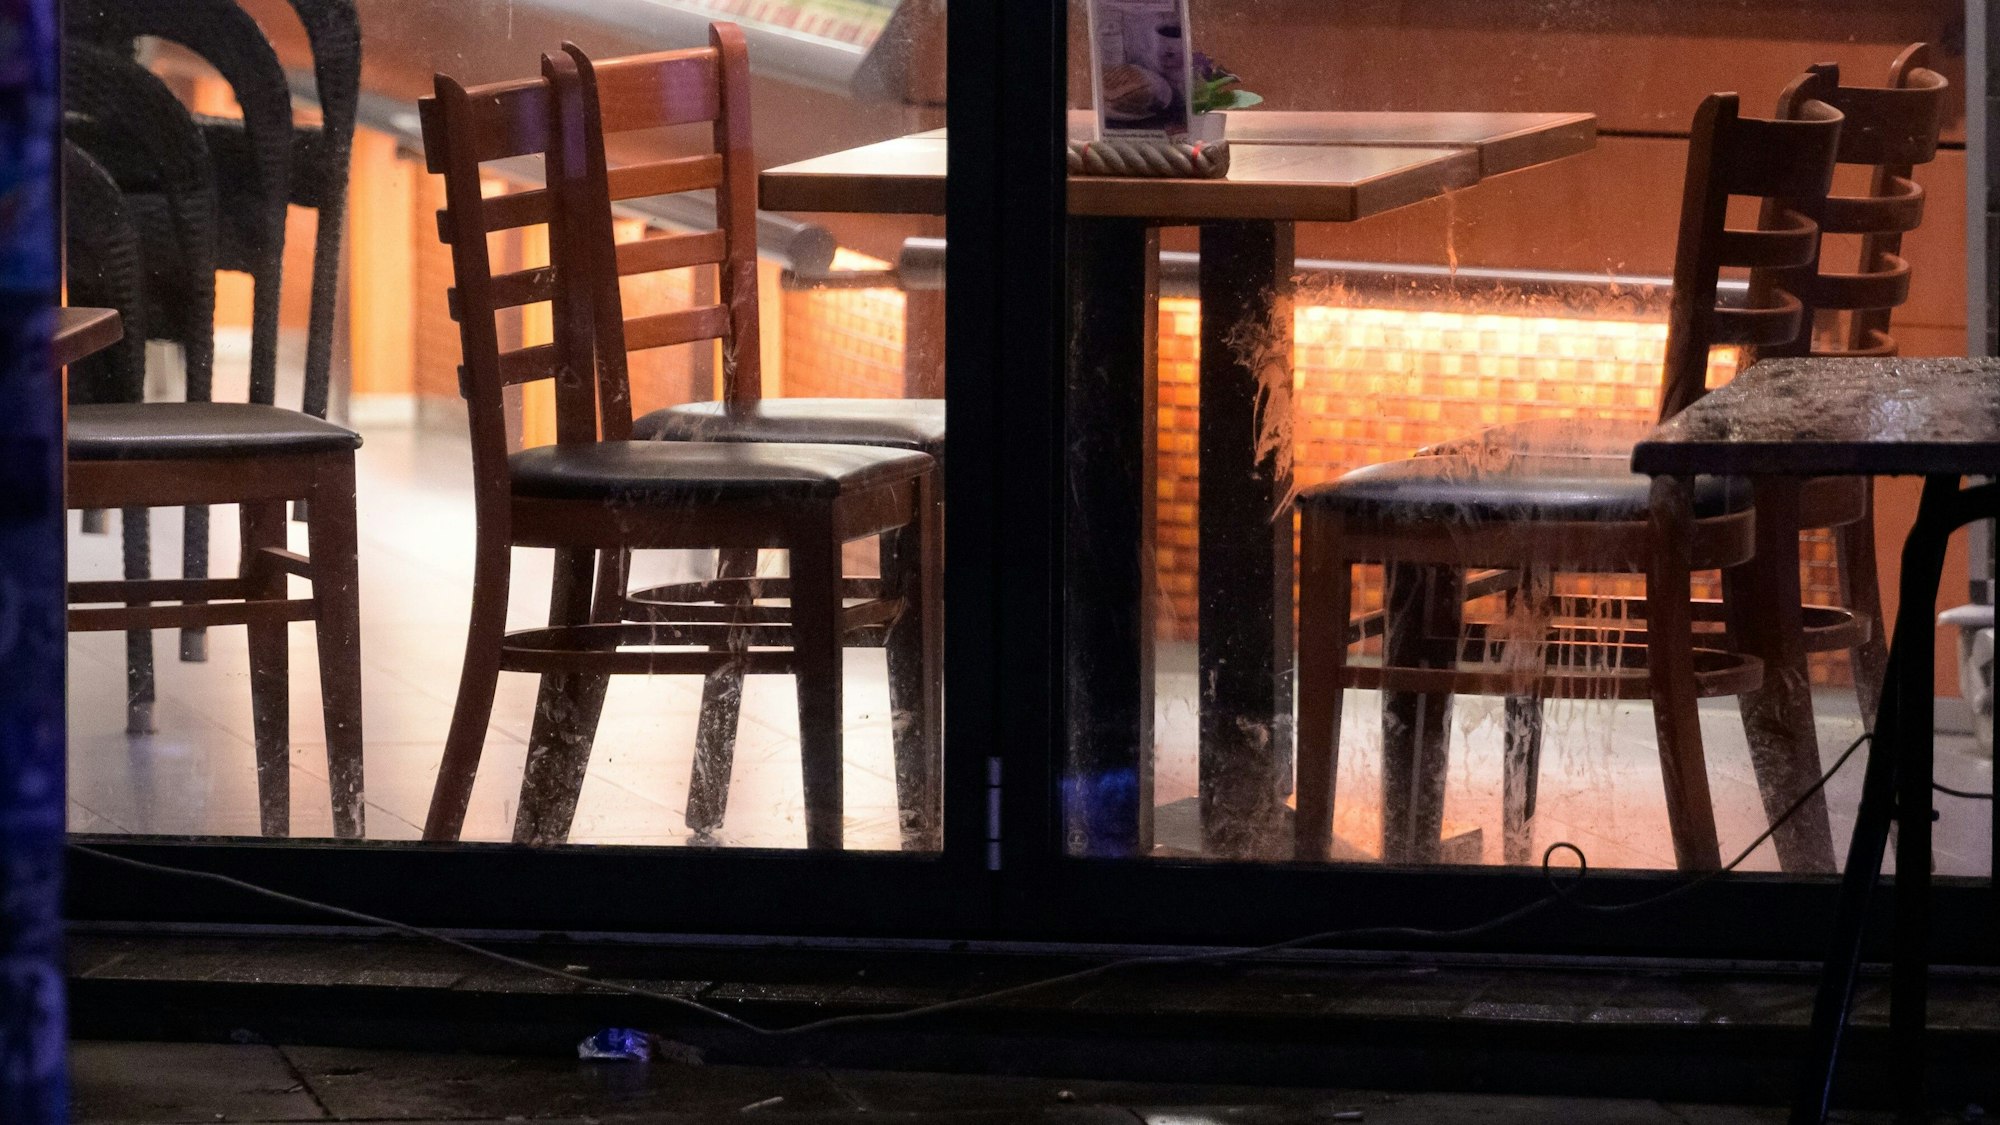 Ein Restaurant hat Russen den Zugang verwehrt. Auf Twitter und Facebook wurde das Vorgehen scharf kritisiert. Unser undatiertes Symbolfoto zeigt Stühle in einer Bäckerei – das Foto steht in keinem Zusammenhang mit dem aktuellen Fall in Baden-Württemberg.